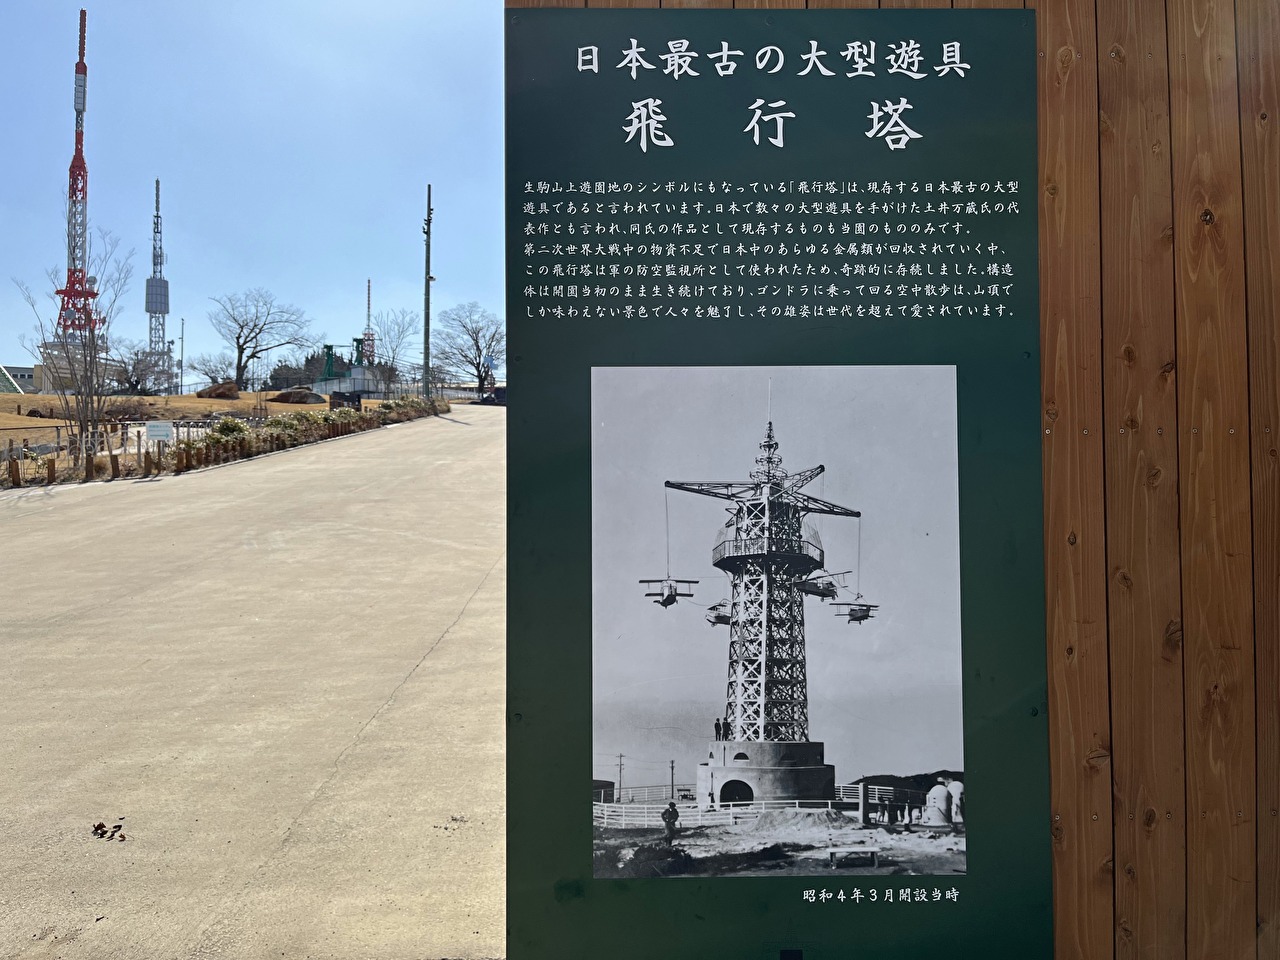 飛行塔が日本最高の大型遊具であるという紹介文